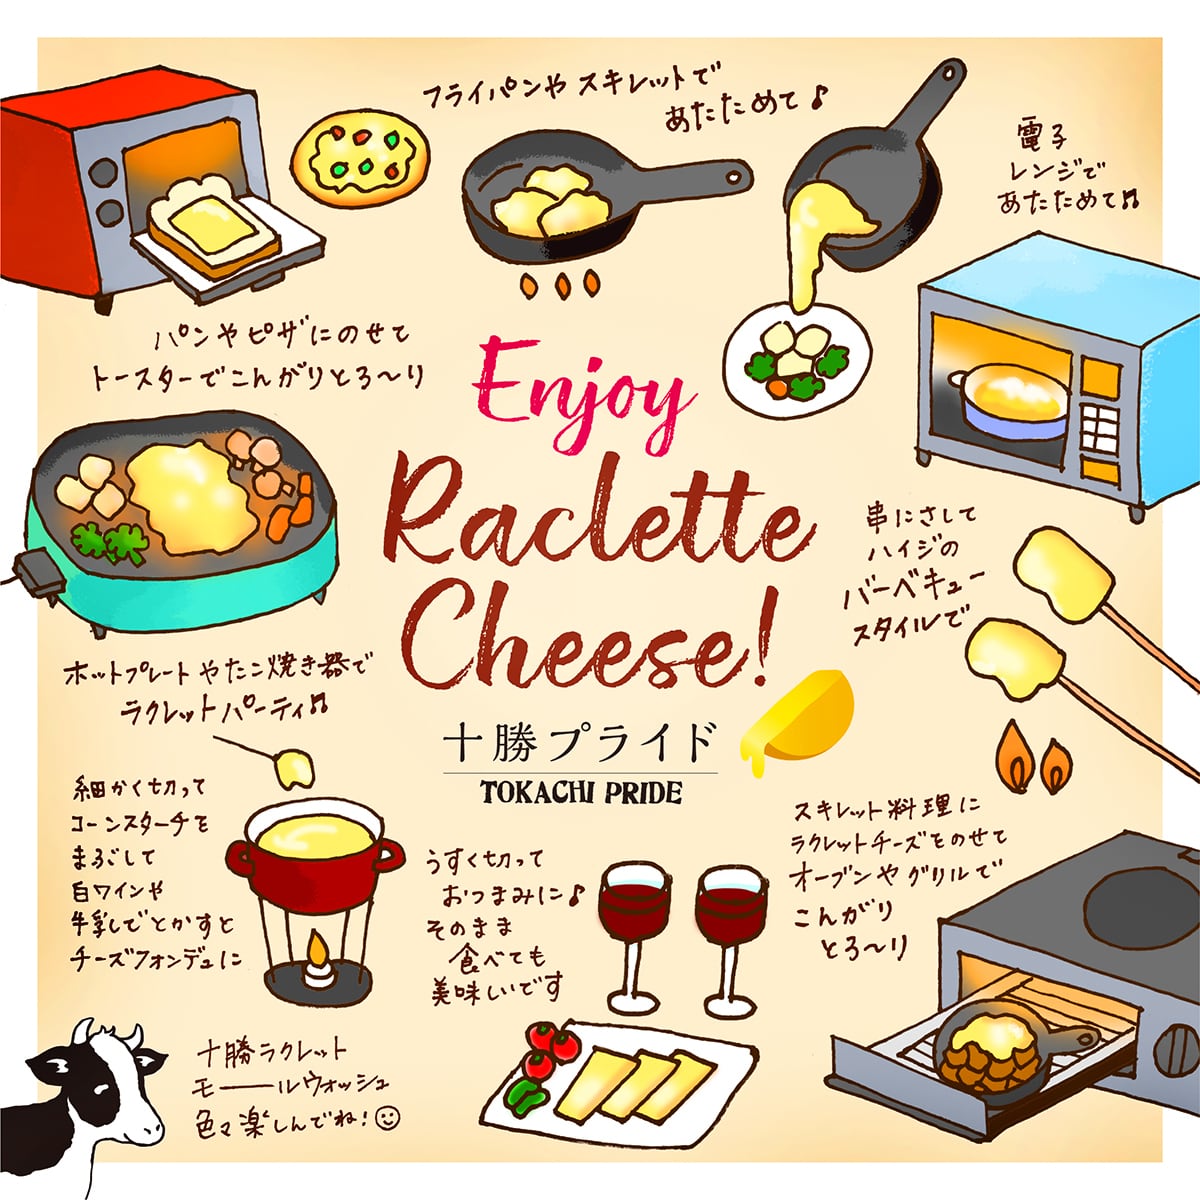 【送料無料】北海道十勝産インカルージュとラクレットチーズ2種類詰め合わせギフト【毎月月初に発送】